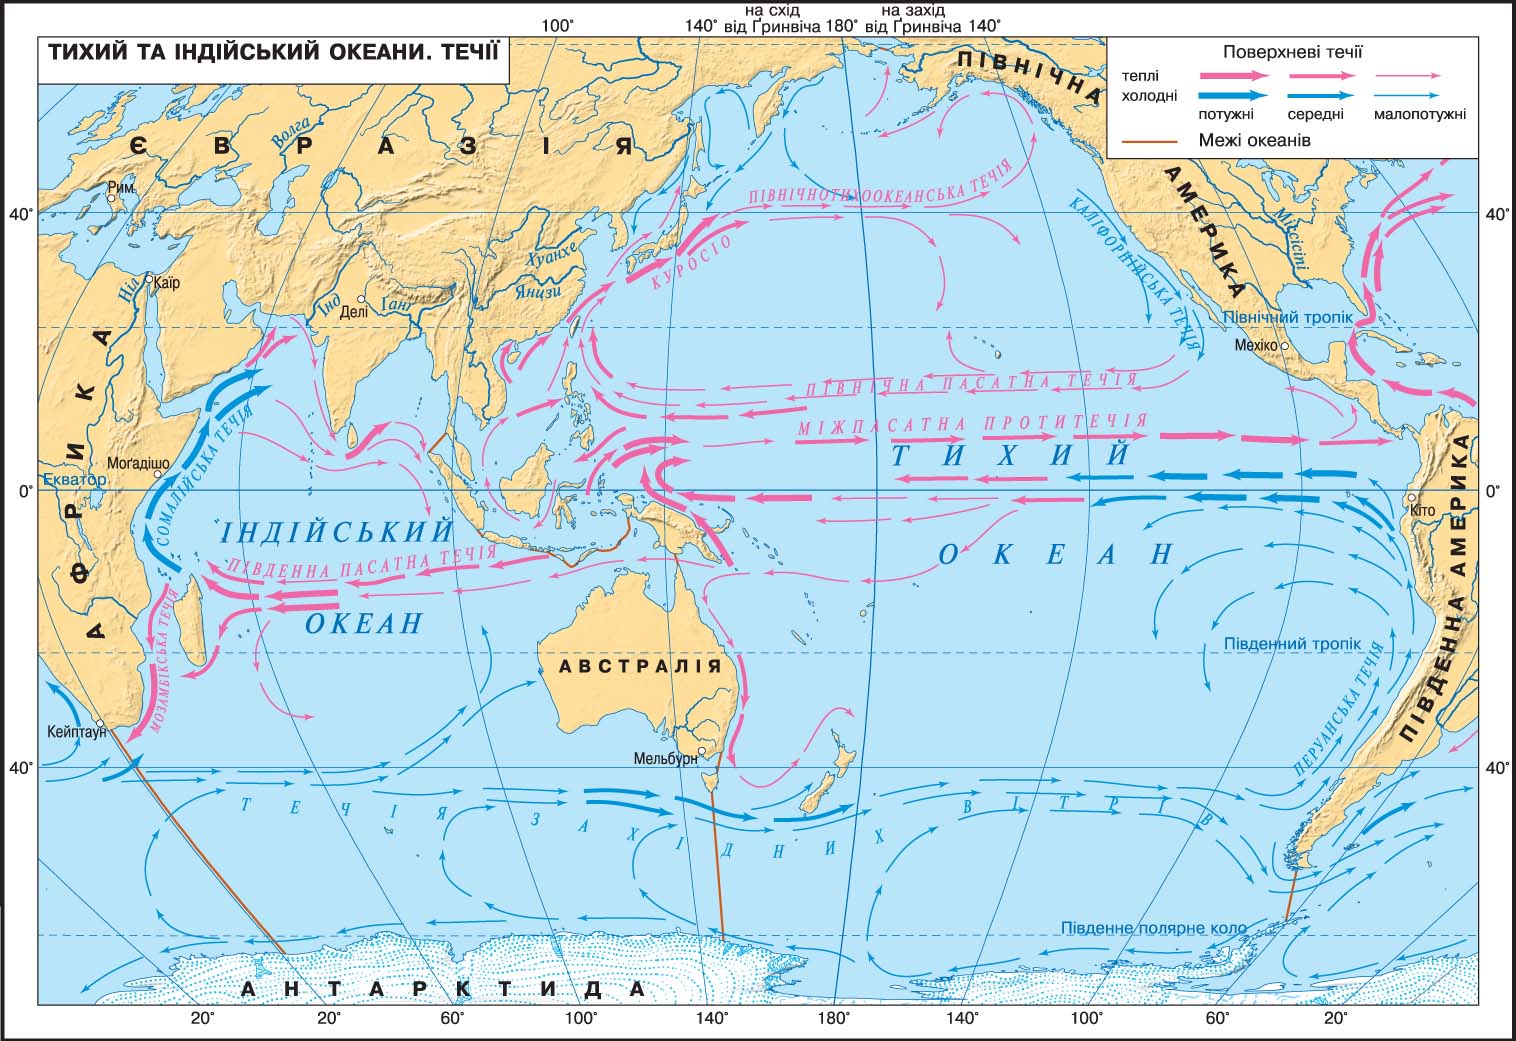 Тихий океан окраинные океаны. Карта течений Тихого океана. Тихий океан карта 7 класс атлас холодные и теплые течения. Течения Тихого океана 7 класс. Течения Тихого океана теплые и холодные на карте 7.